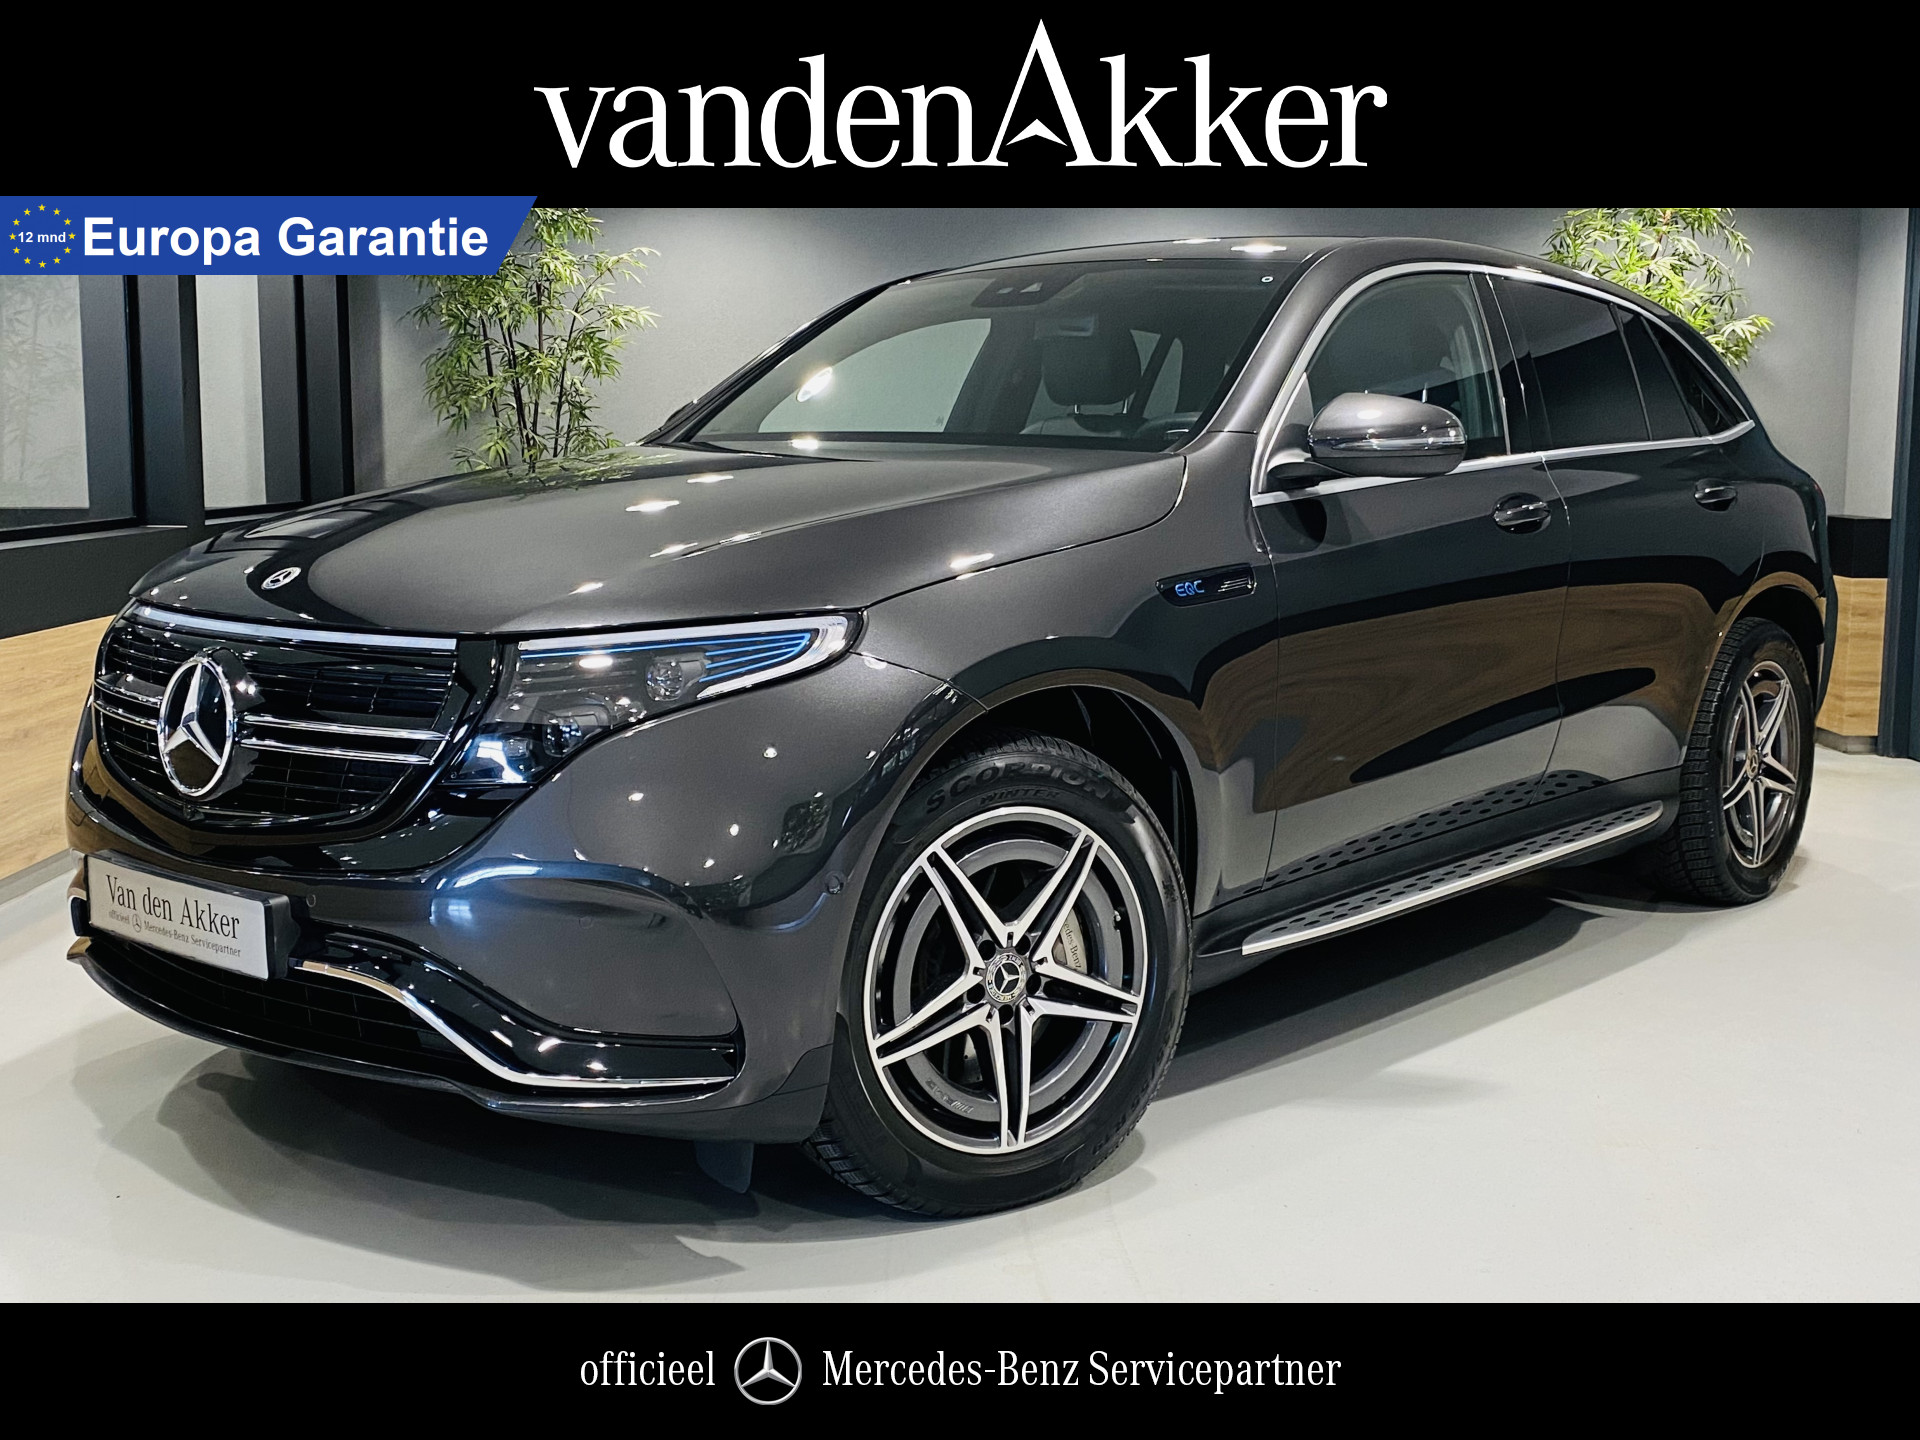 Mercedes-Benz EQC 400 4MATIC AMG 408 pk // MultiBeam LED // Sfeerverlichting // Treeplanken // Navigatie // 19" AMG Velgen // Parktronic // Touchpad // Wide Screen bij viaBOVAG.nl